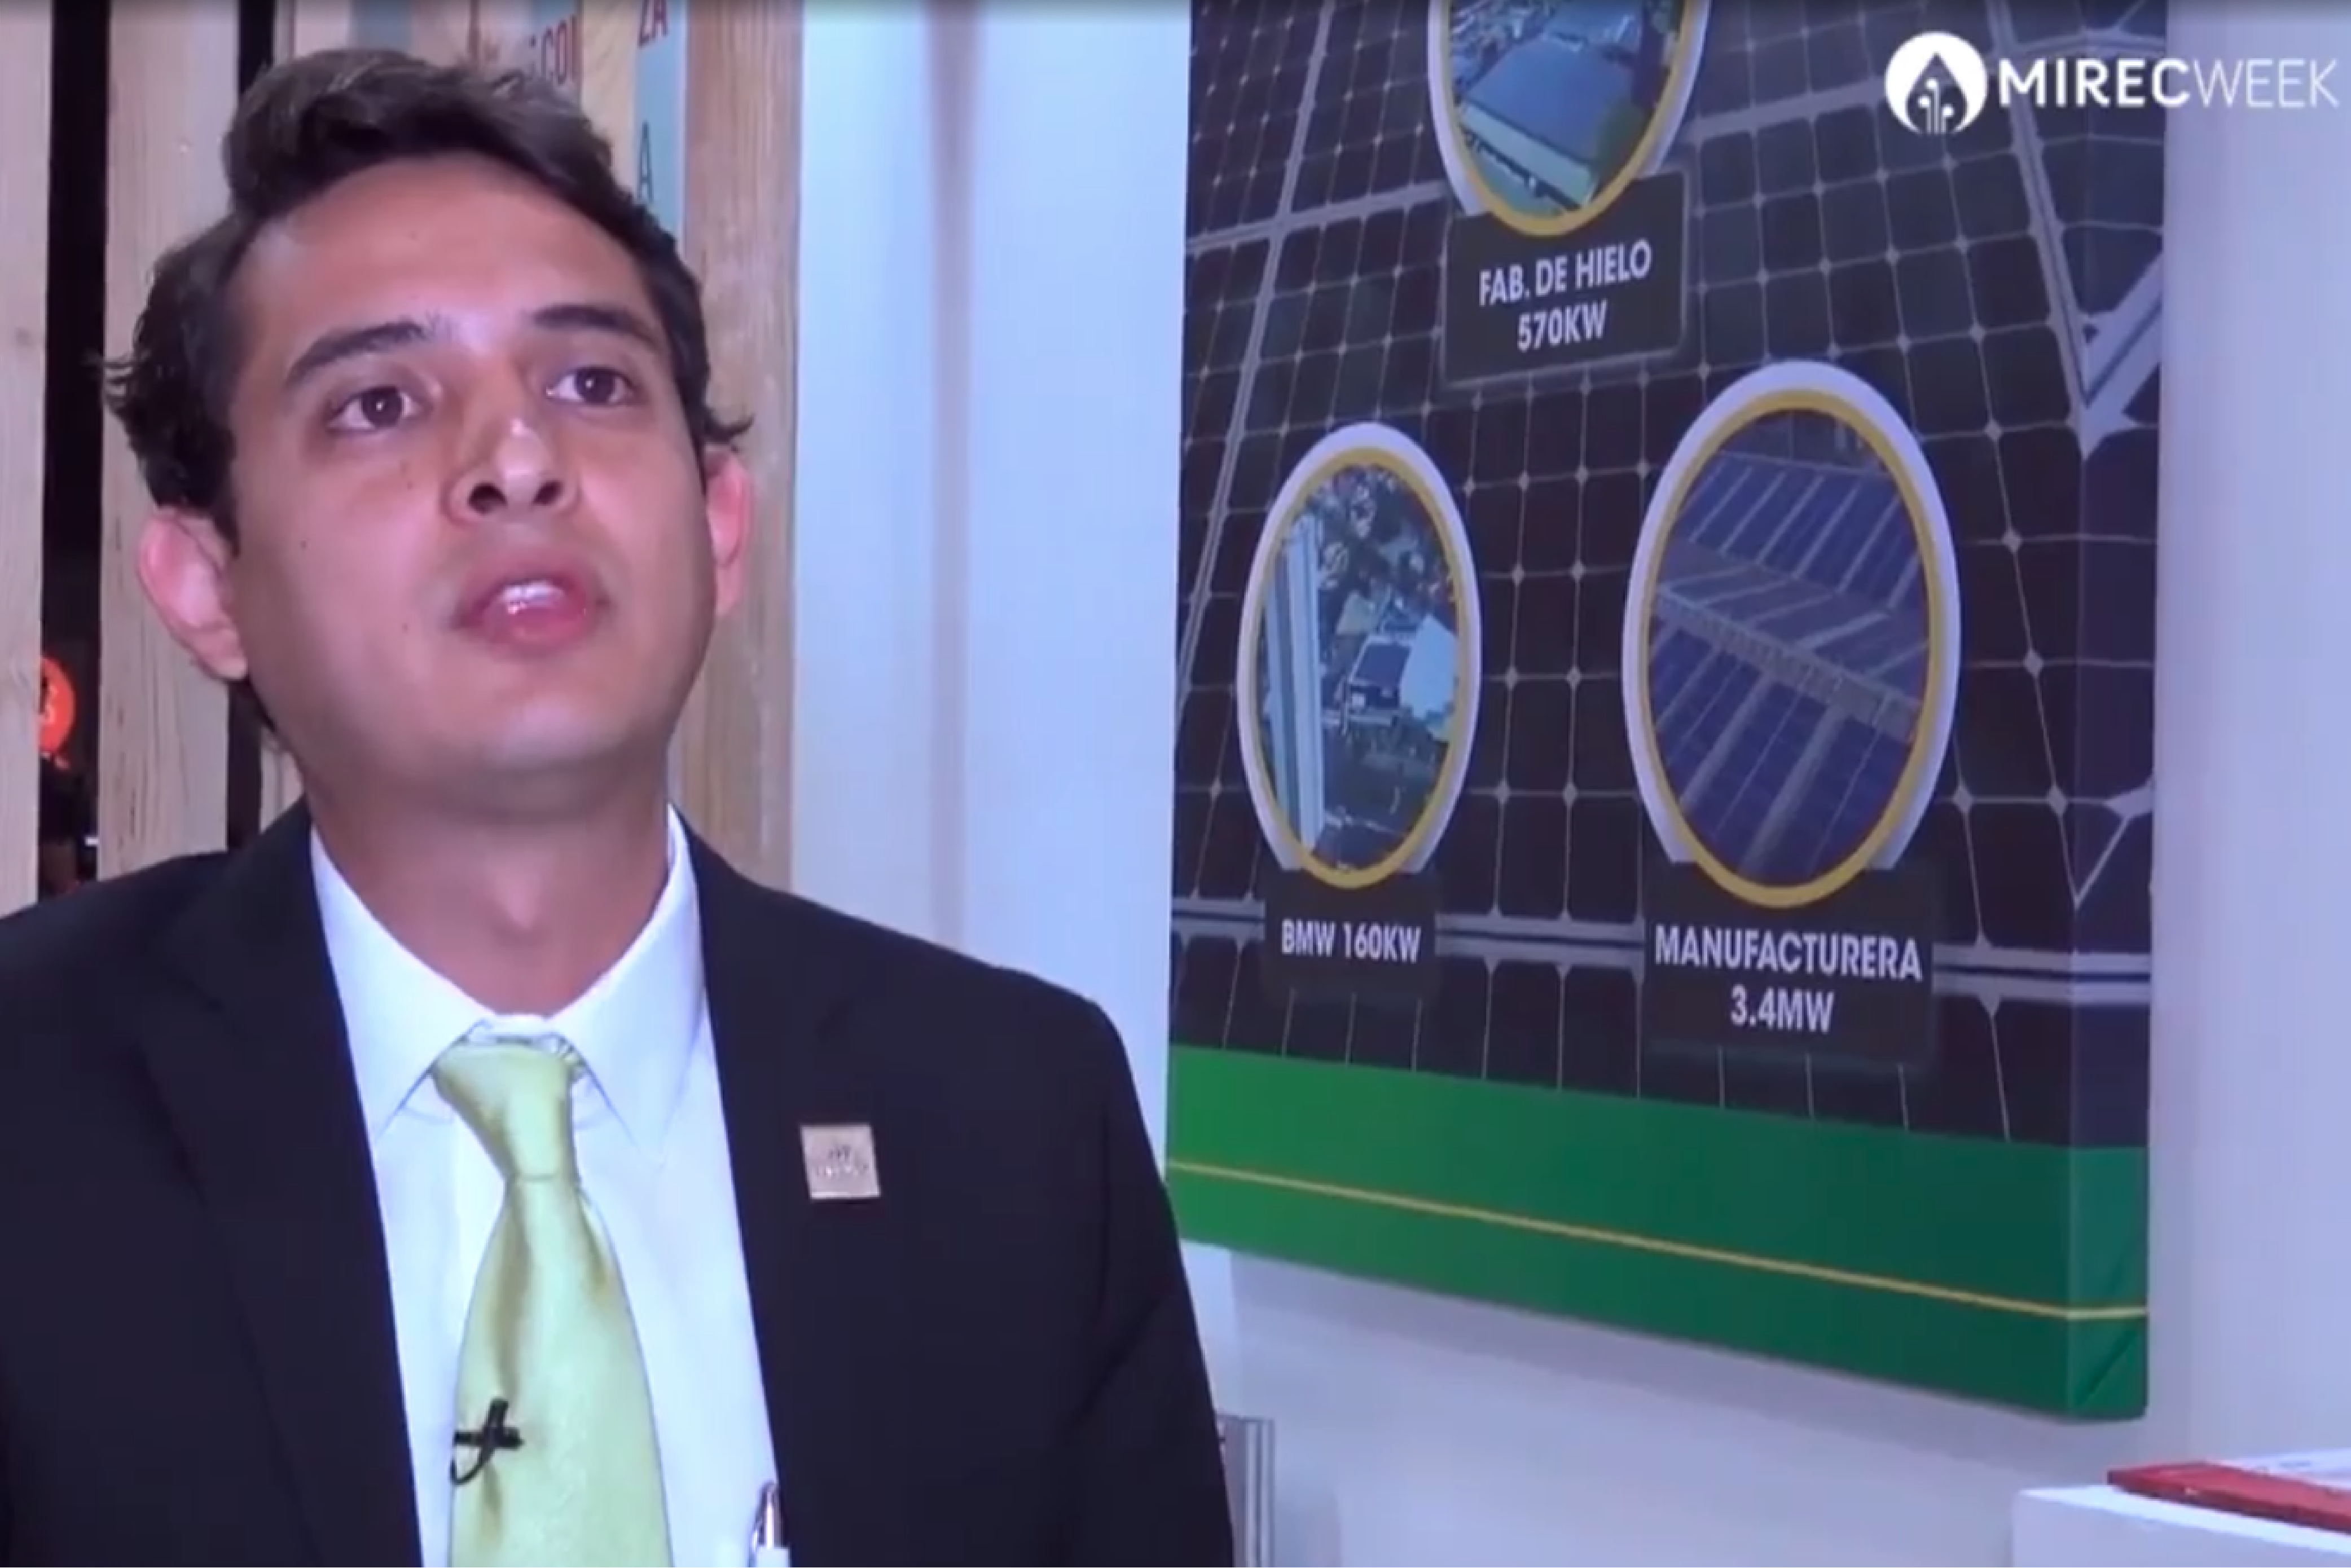 Video: Adrián Díaz Servicio al Cliente, Atención y Gestoría, Tresel